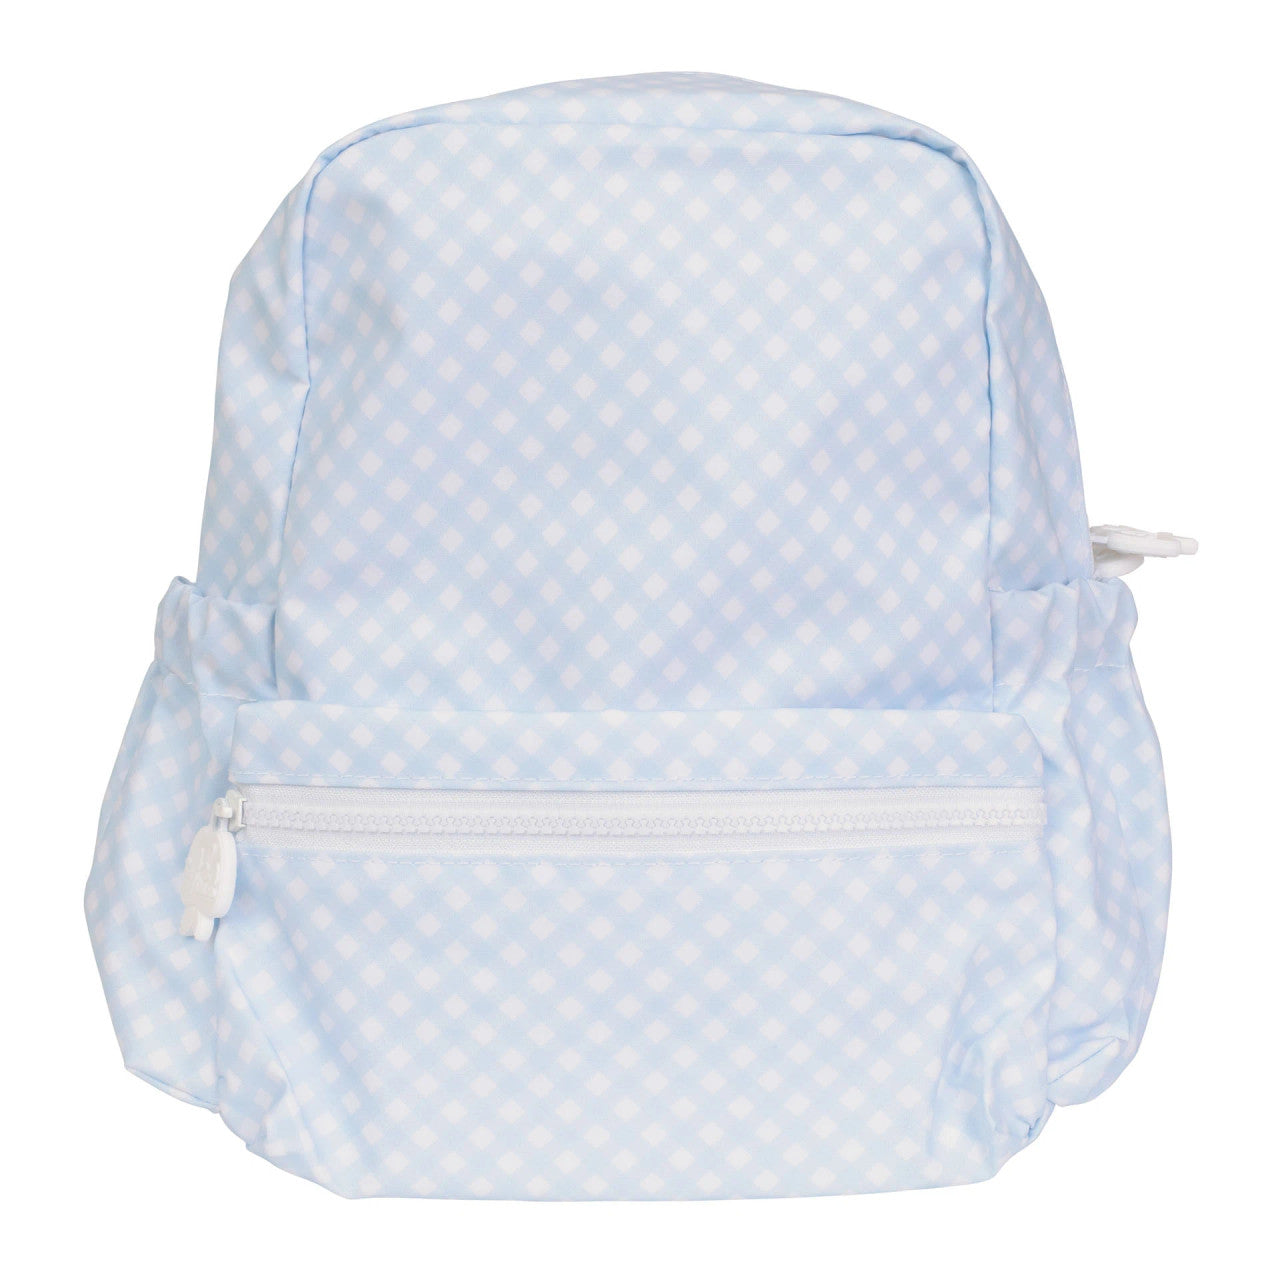 Tot Backpack in Blue Gingham  - Doodlebug's Children's Boutique